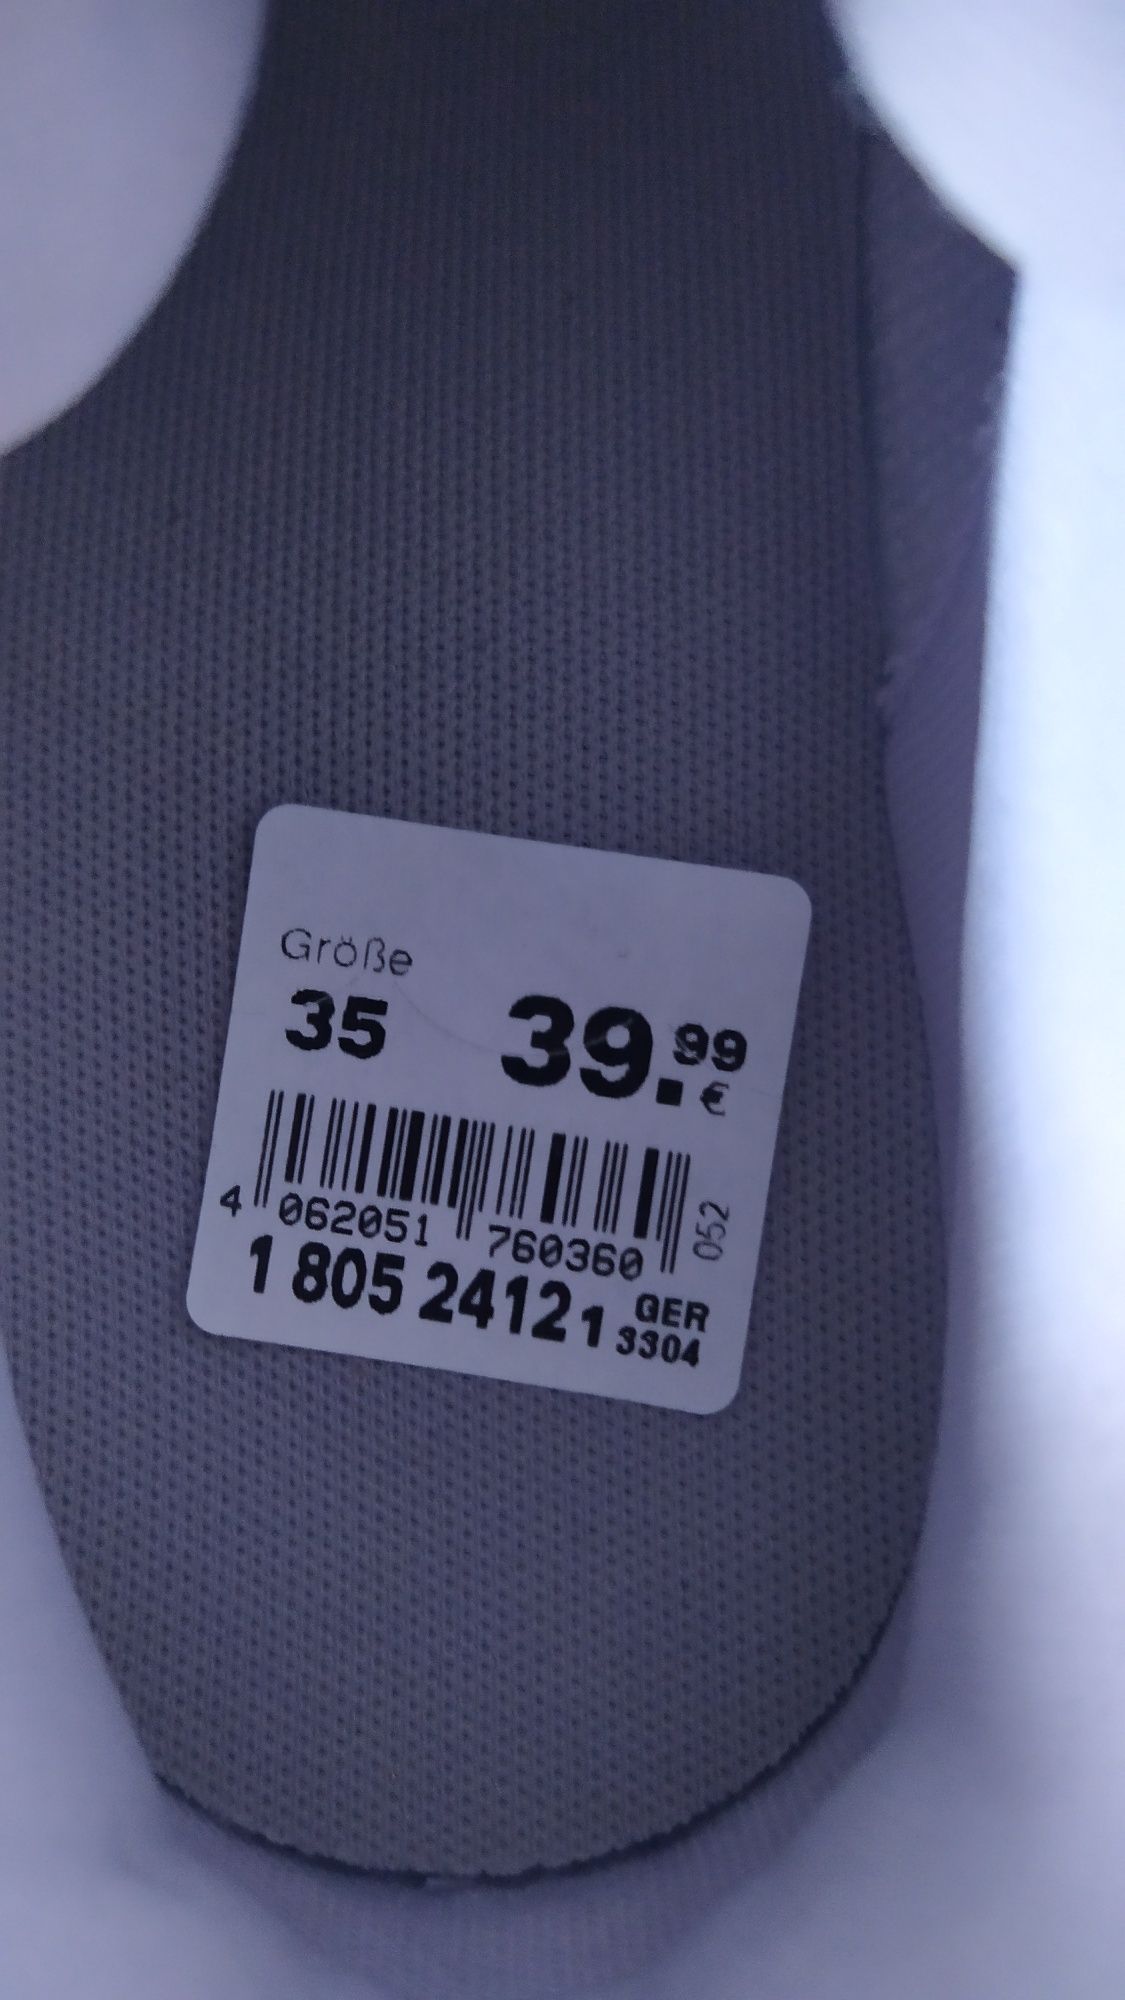 Кроссовки Adidas. Размер: 35. Оригинал.